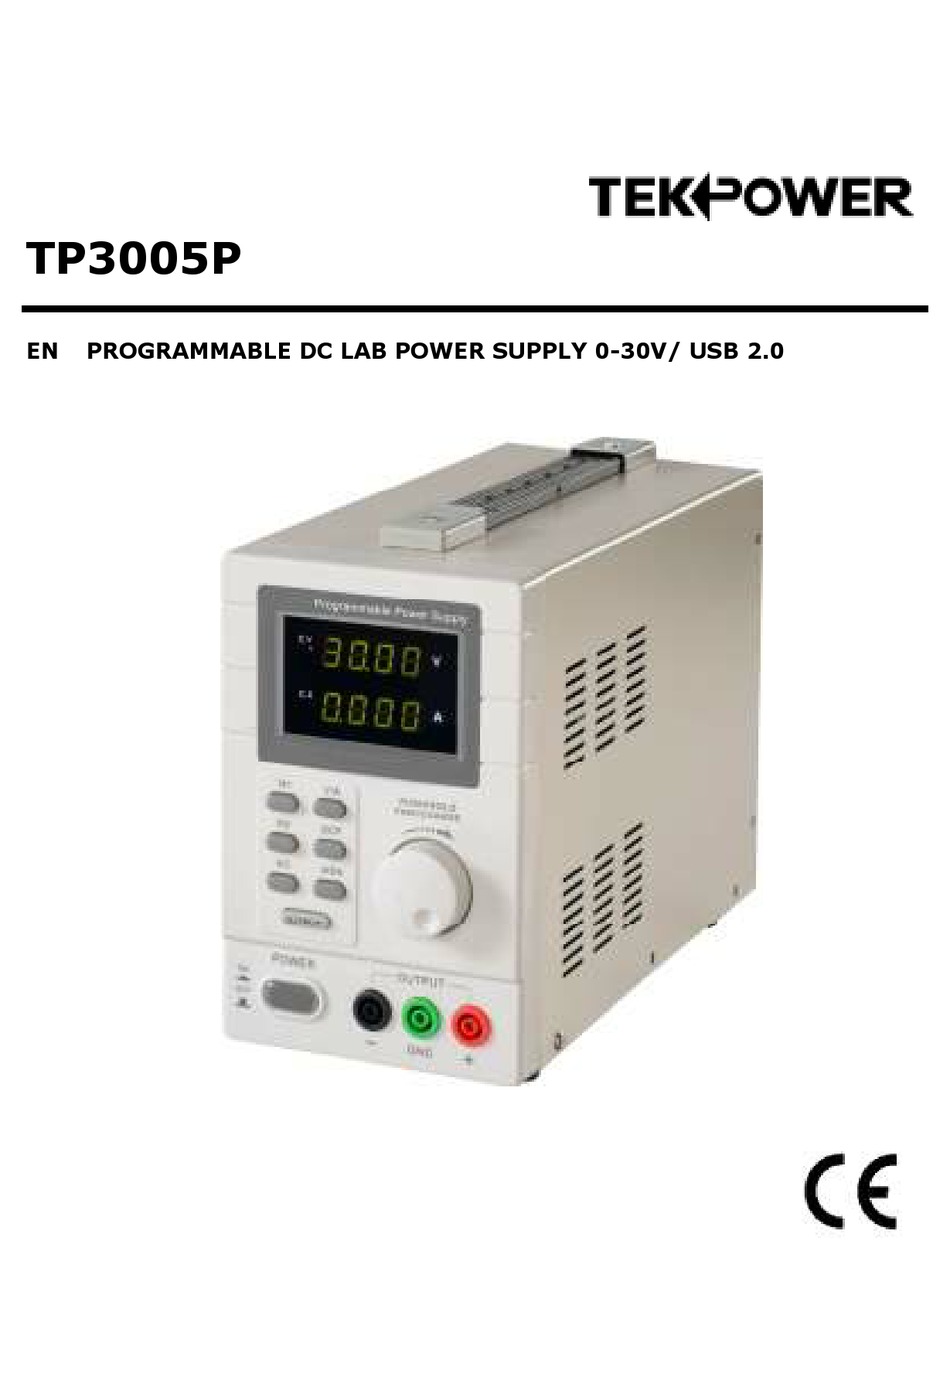 TEKPOWER TP3005P MANUAL Pdf Download | ManualsLib